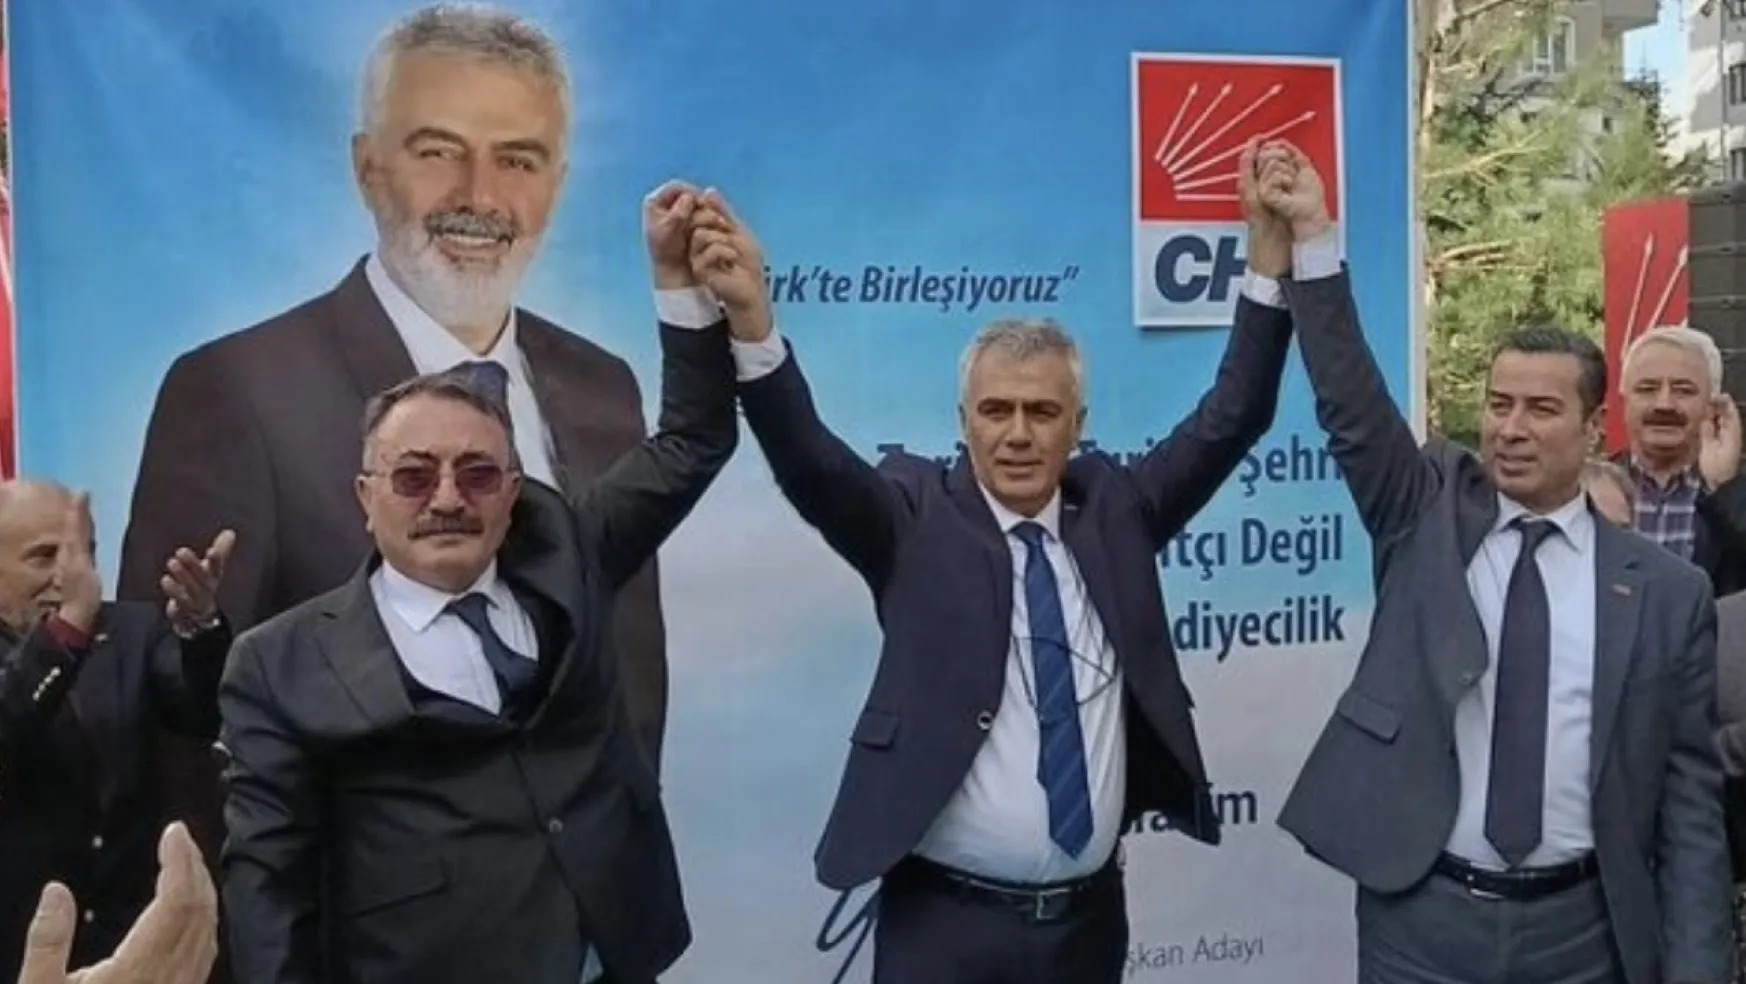 32 Yıllık Belediye Avukatı Hacı İbrahim Yıldırım, halkçı belediyecilik için aday